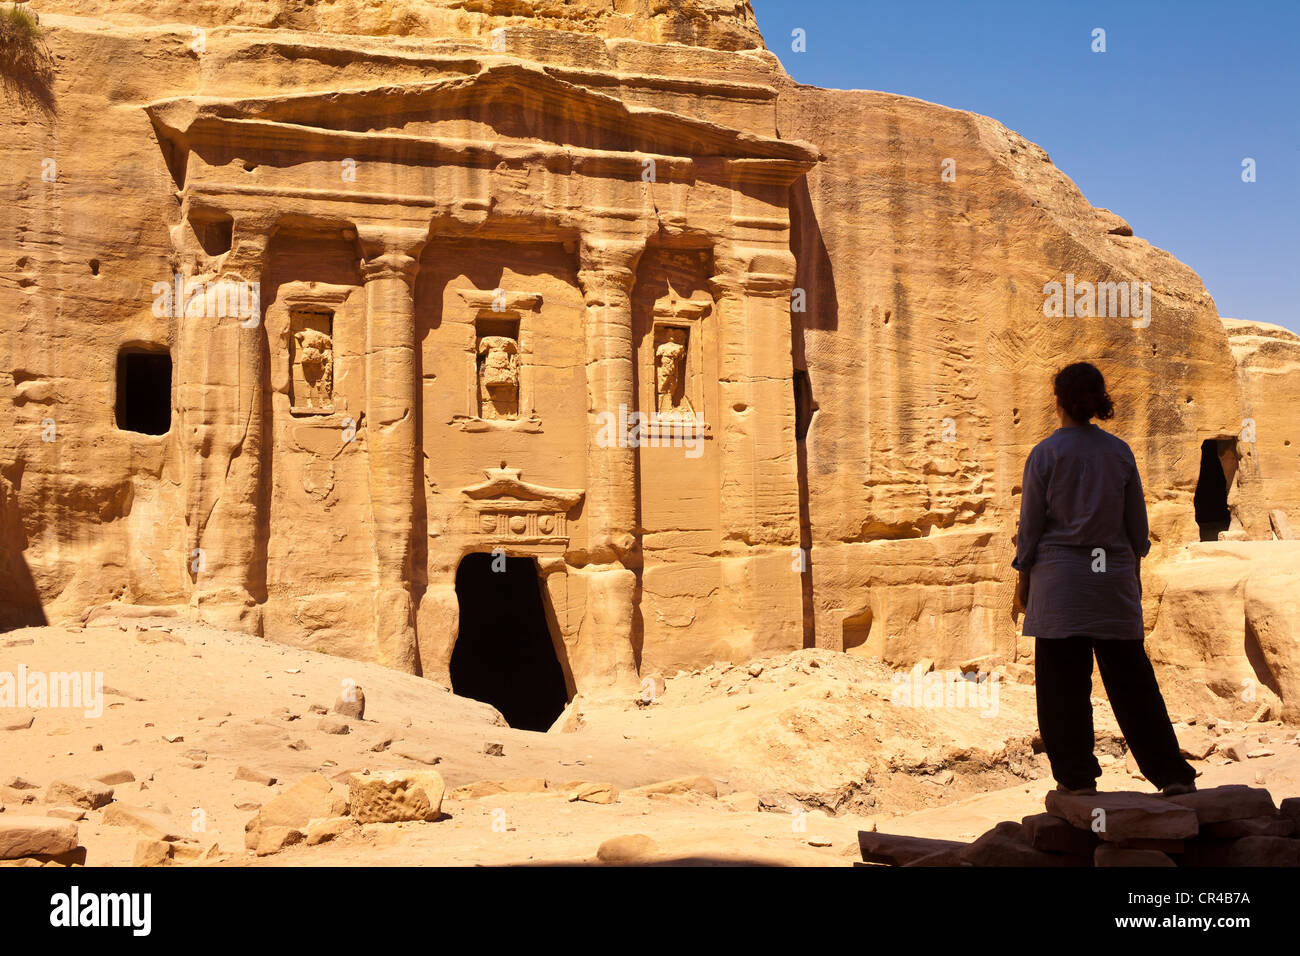 La Jordanie, Nabaean site archéologique de Petra UNESCO World Heritage, le siq, longue gorge sinueuse menant à la place, walker Banque D'Images